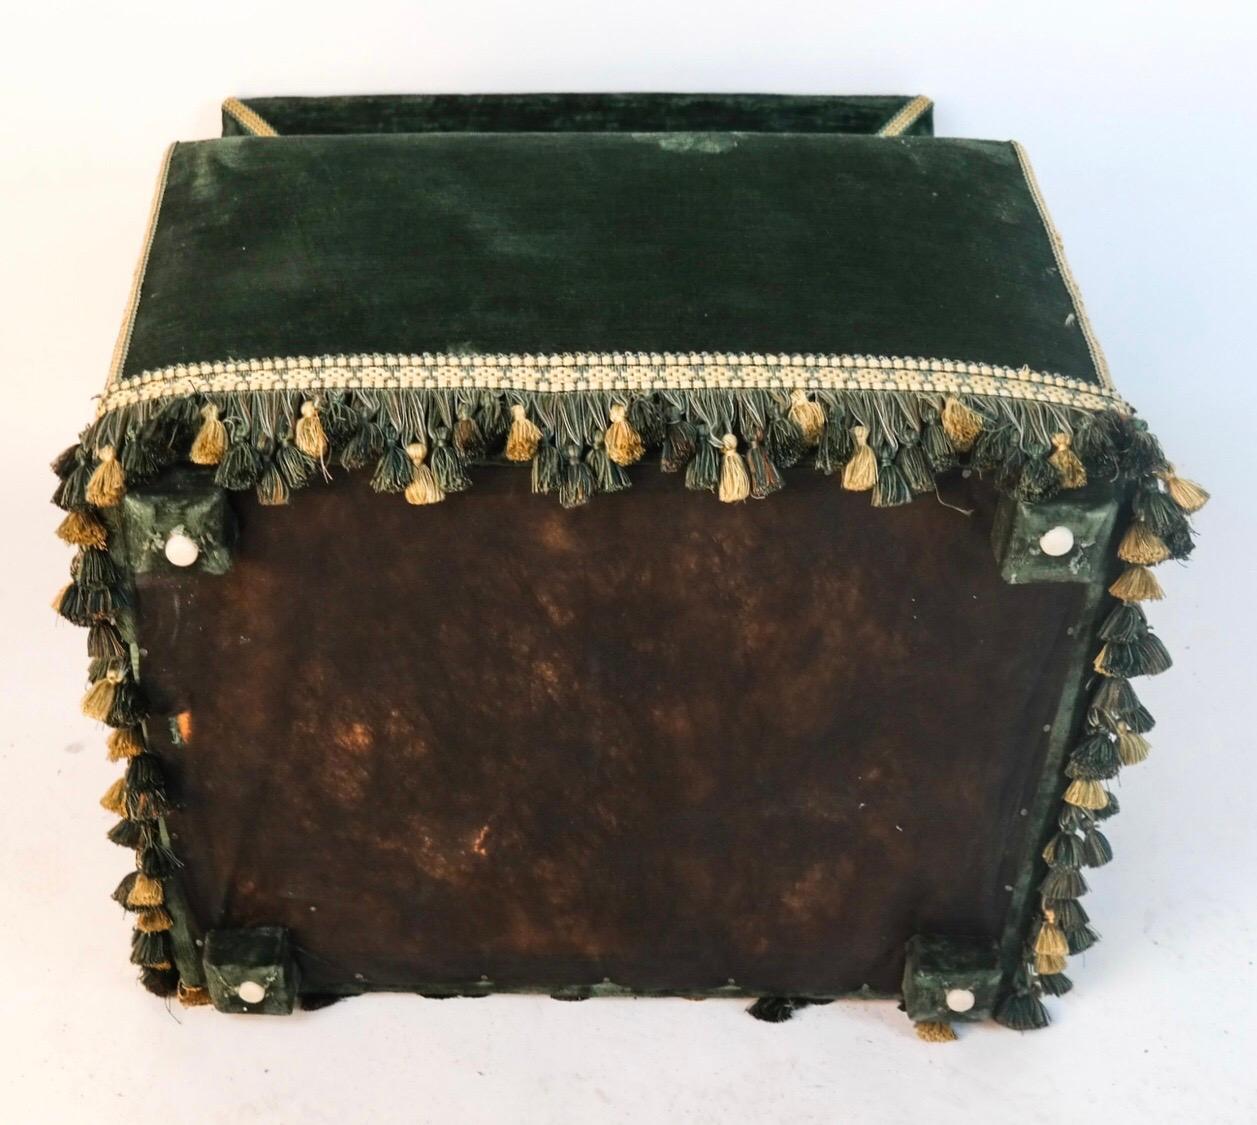 Niche pour chien tapissée de velours vert et de franges vertes et crème. Le couvercle à charnière révèle un coussin vert à l'intérieur.